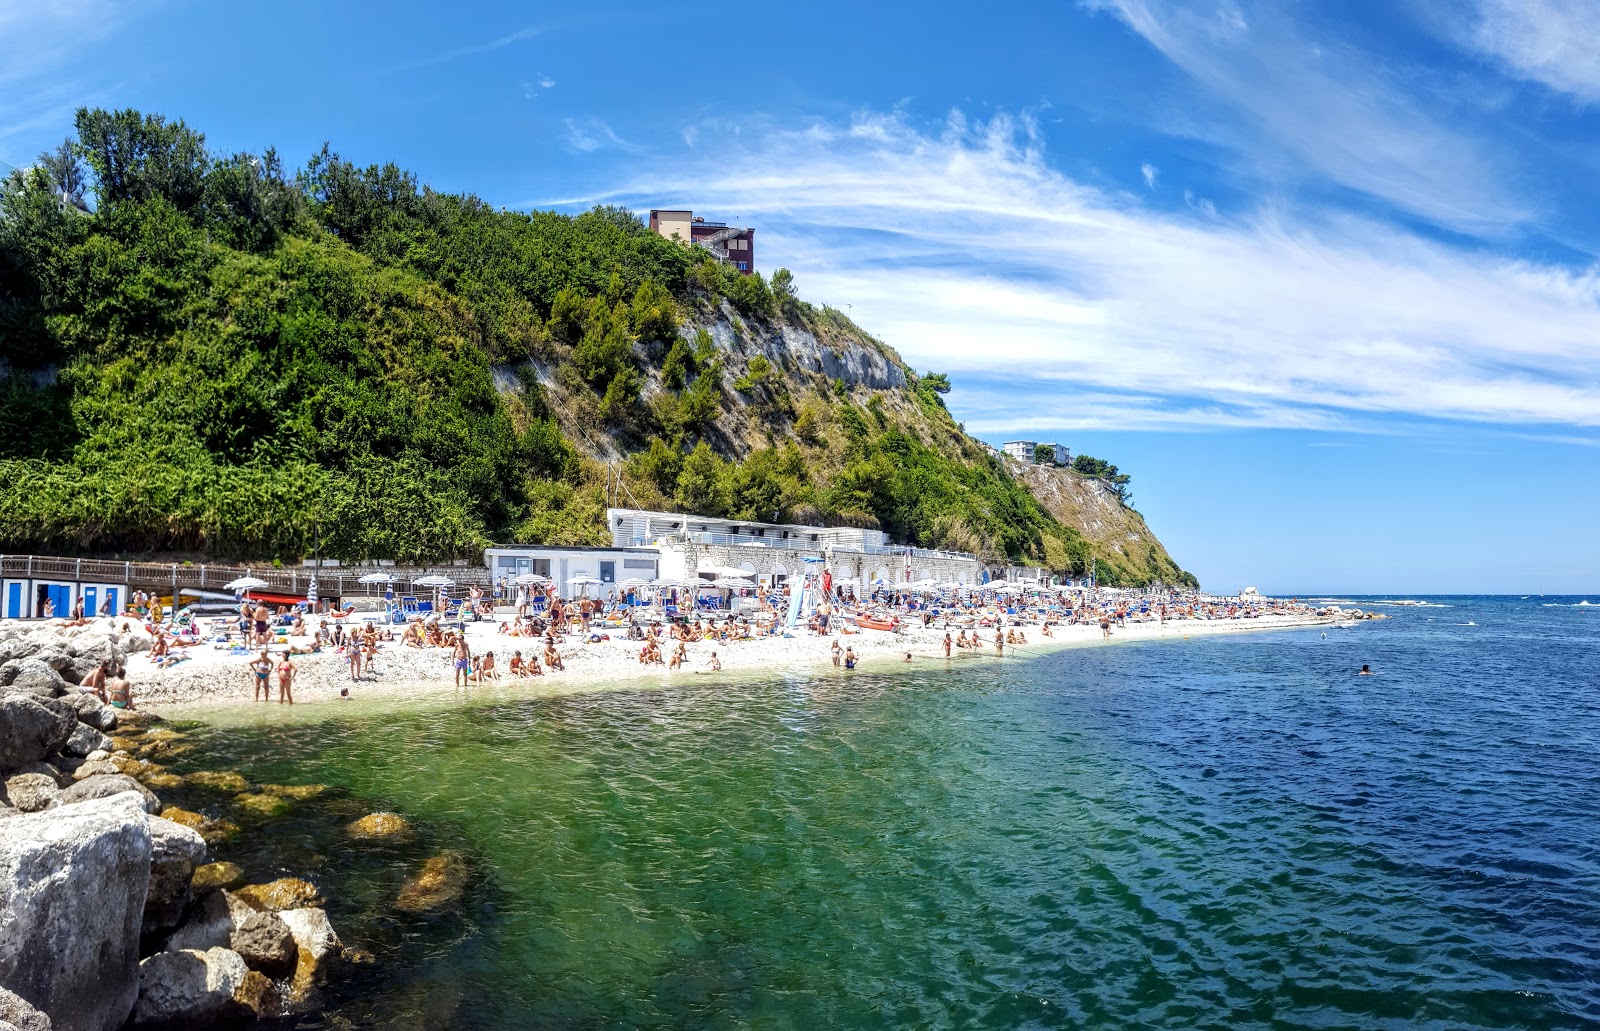 Foto van Spiaggia del Passetto met hoog niveau van netheid